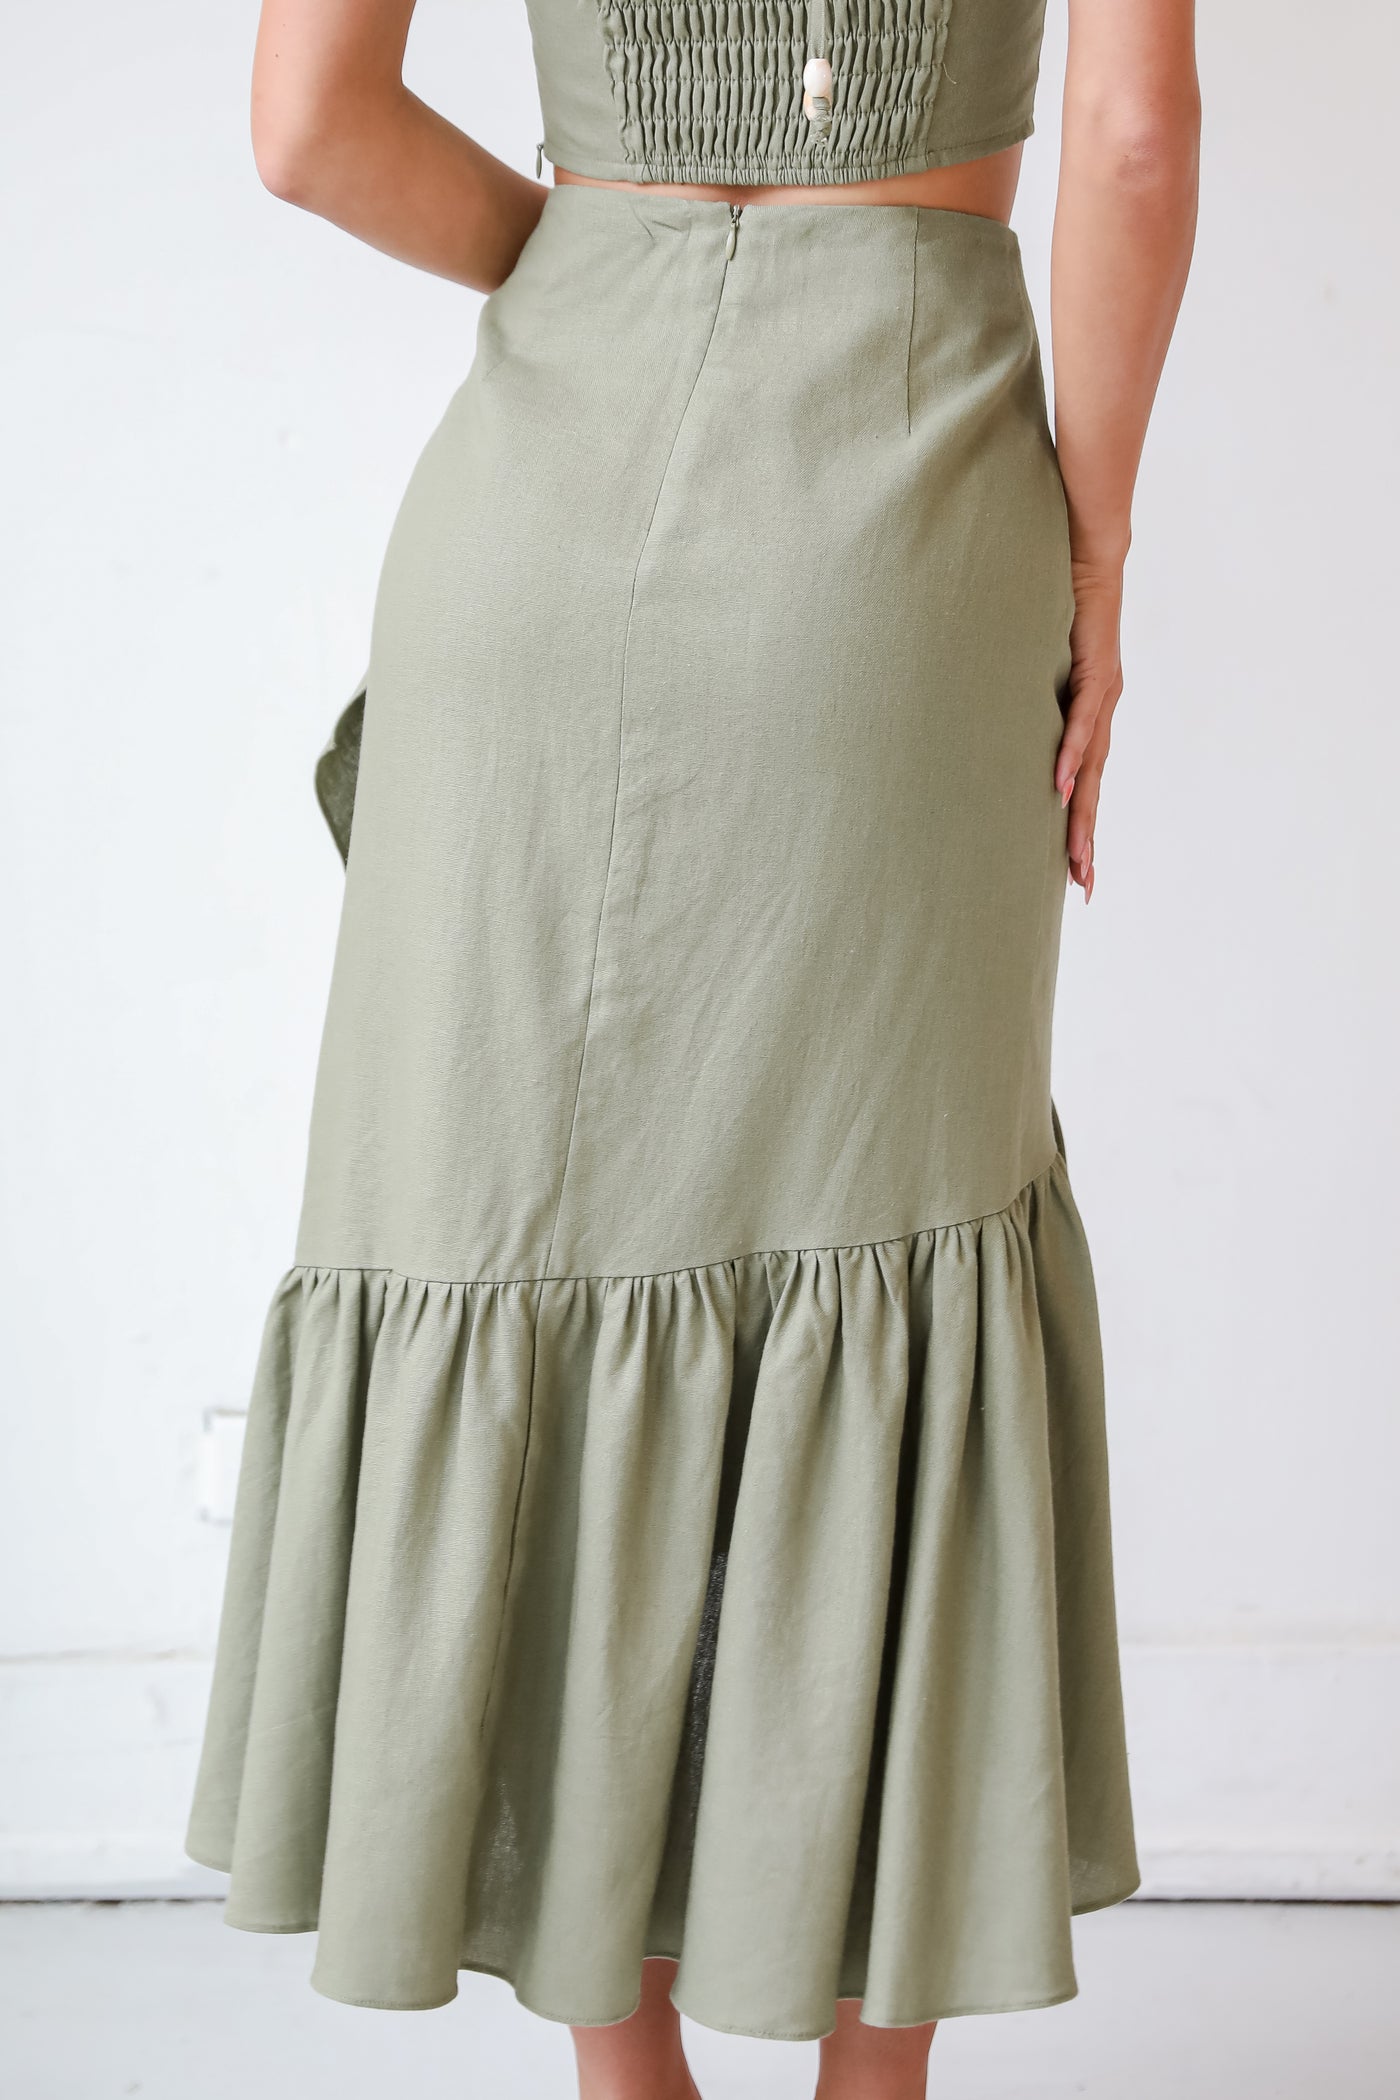 cute Olive Ruffle Midi Skirt